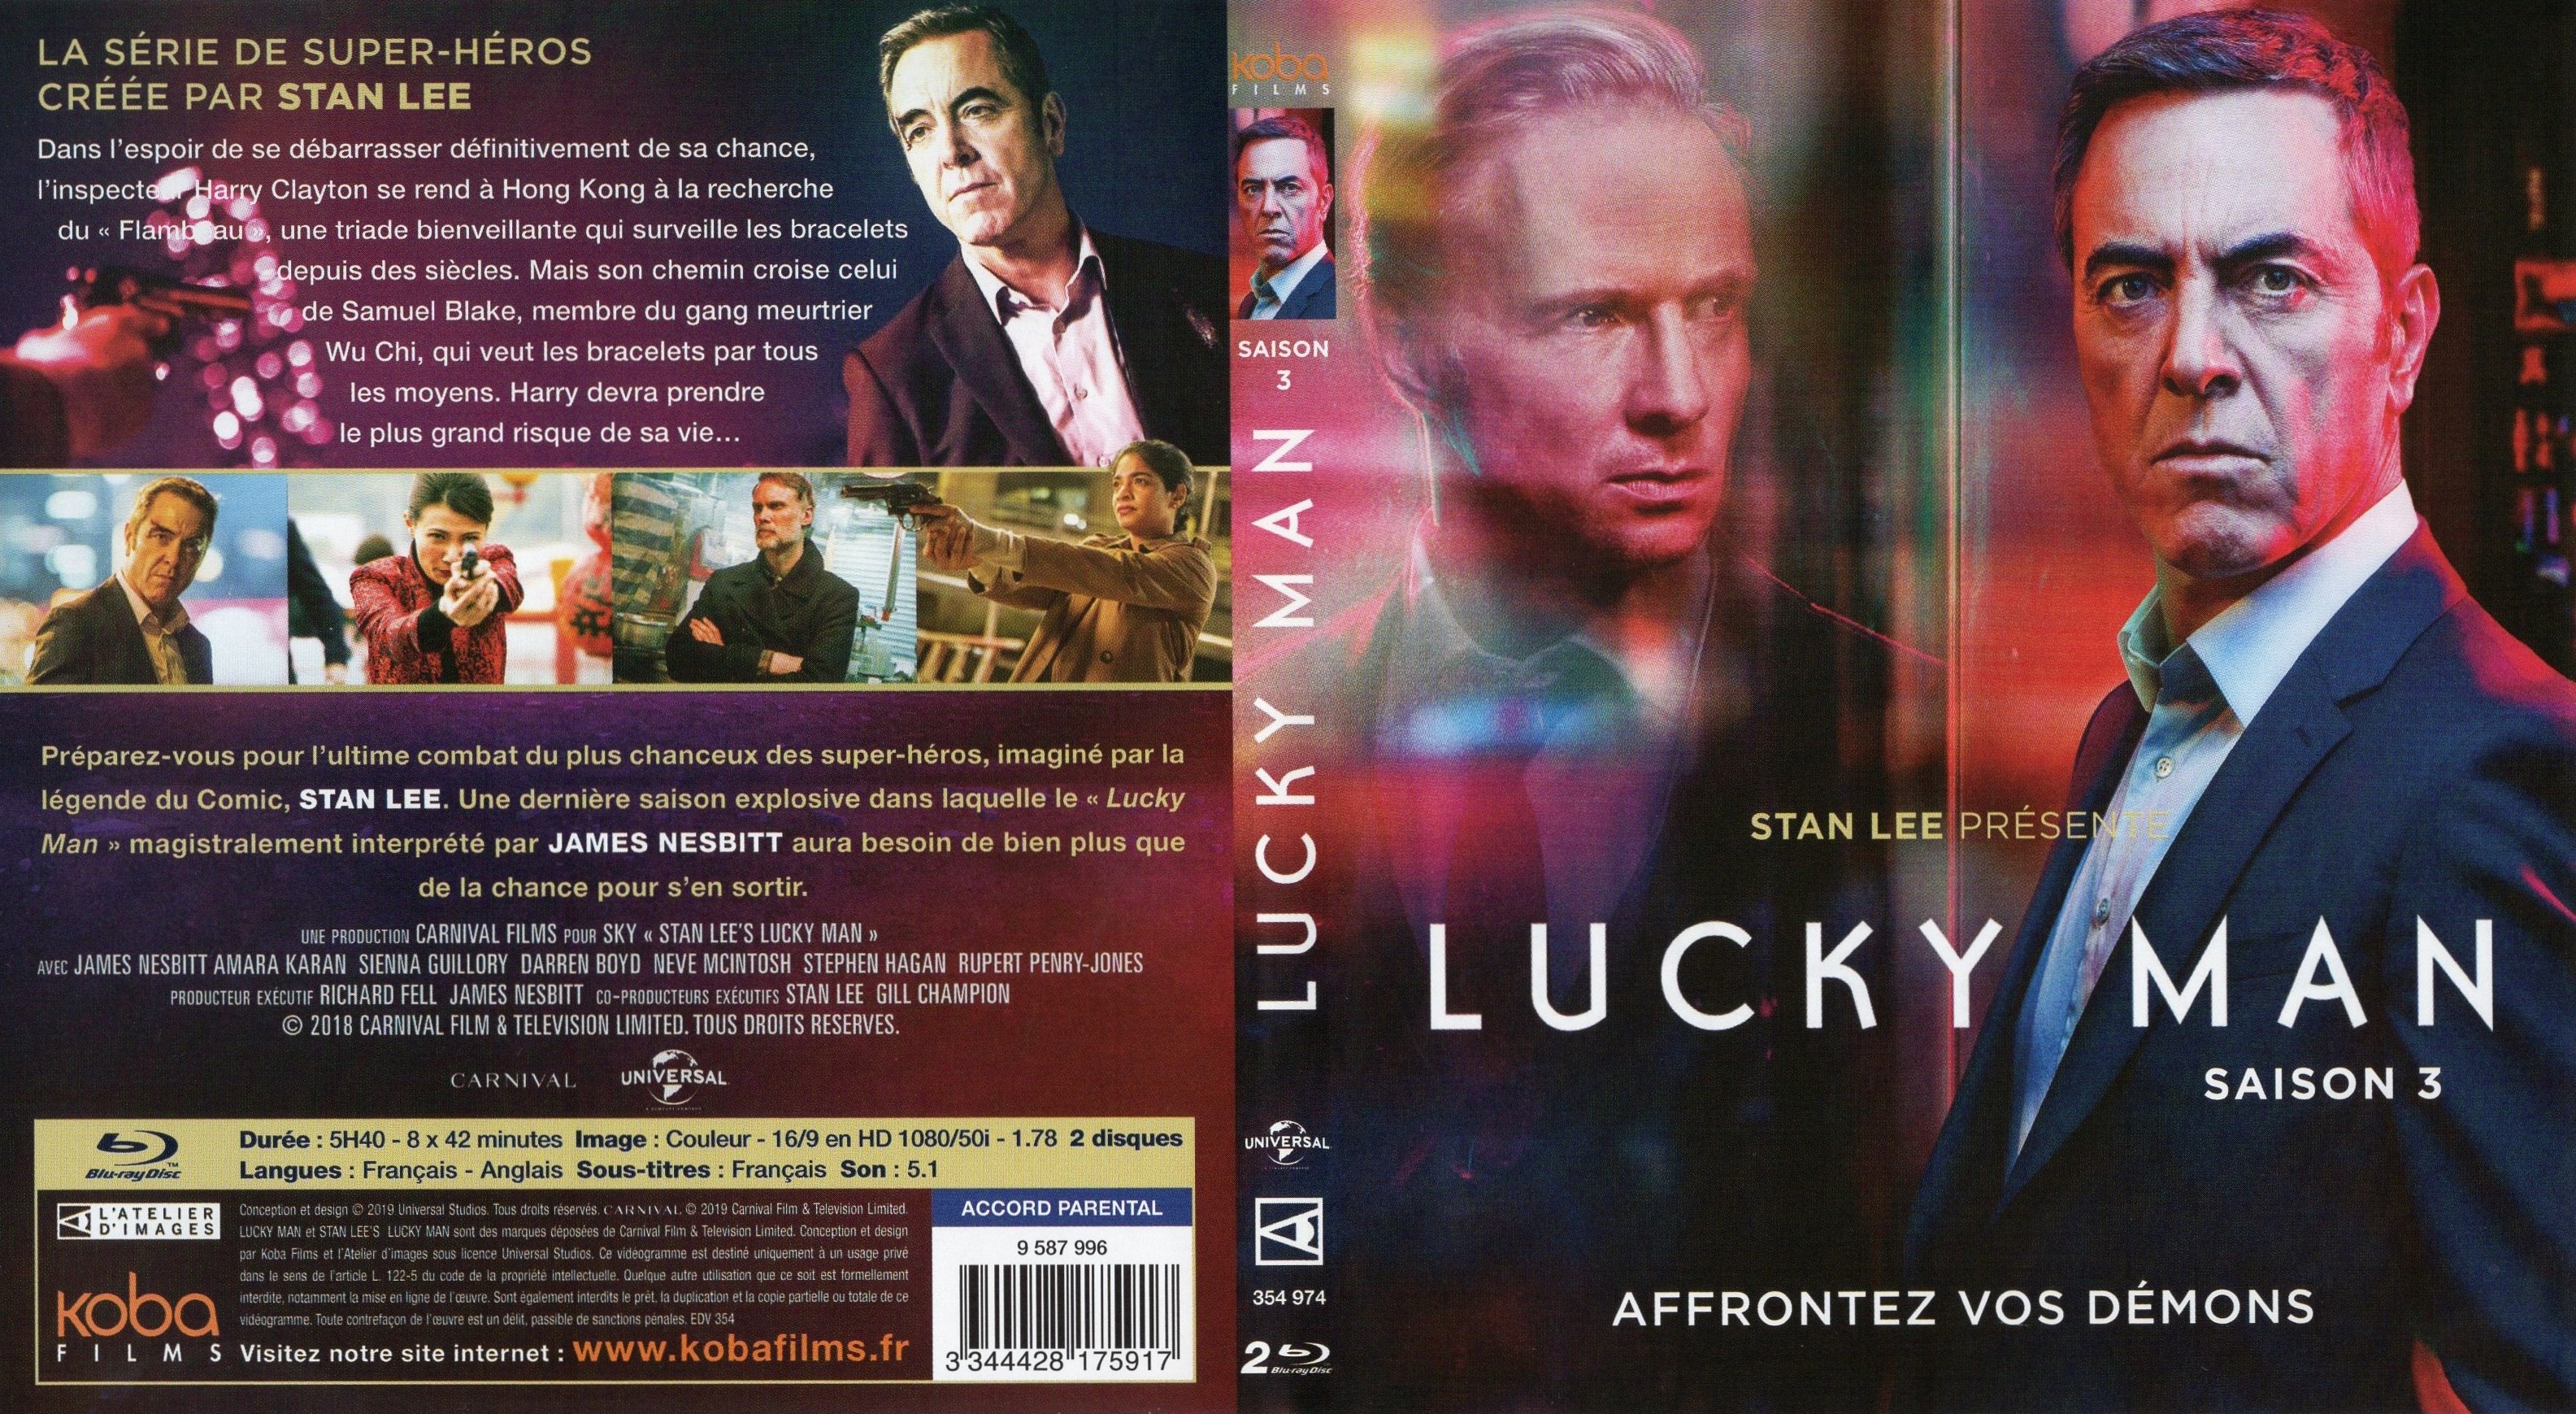 Jaquette DVD Lucky Man Saison 3 (BLU-RAY)